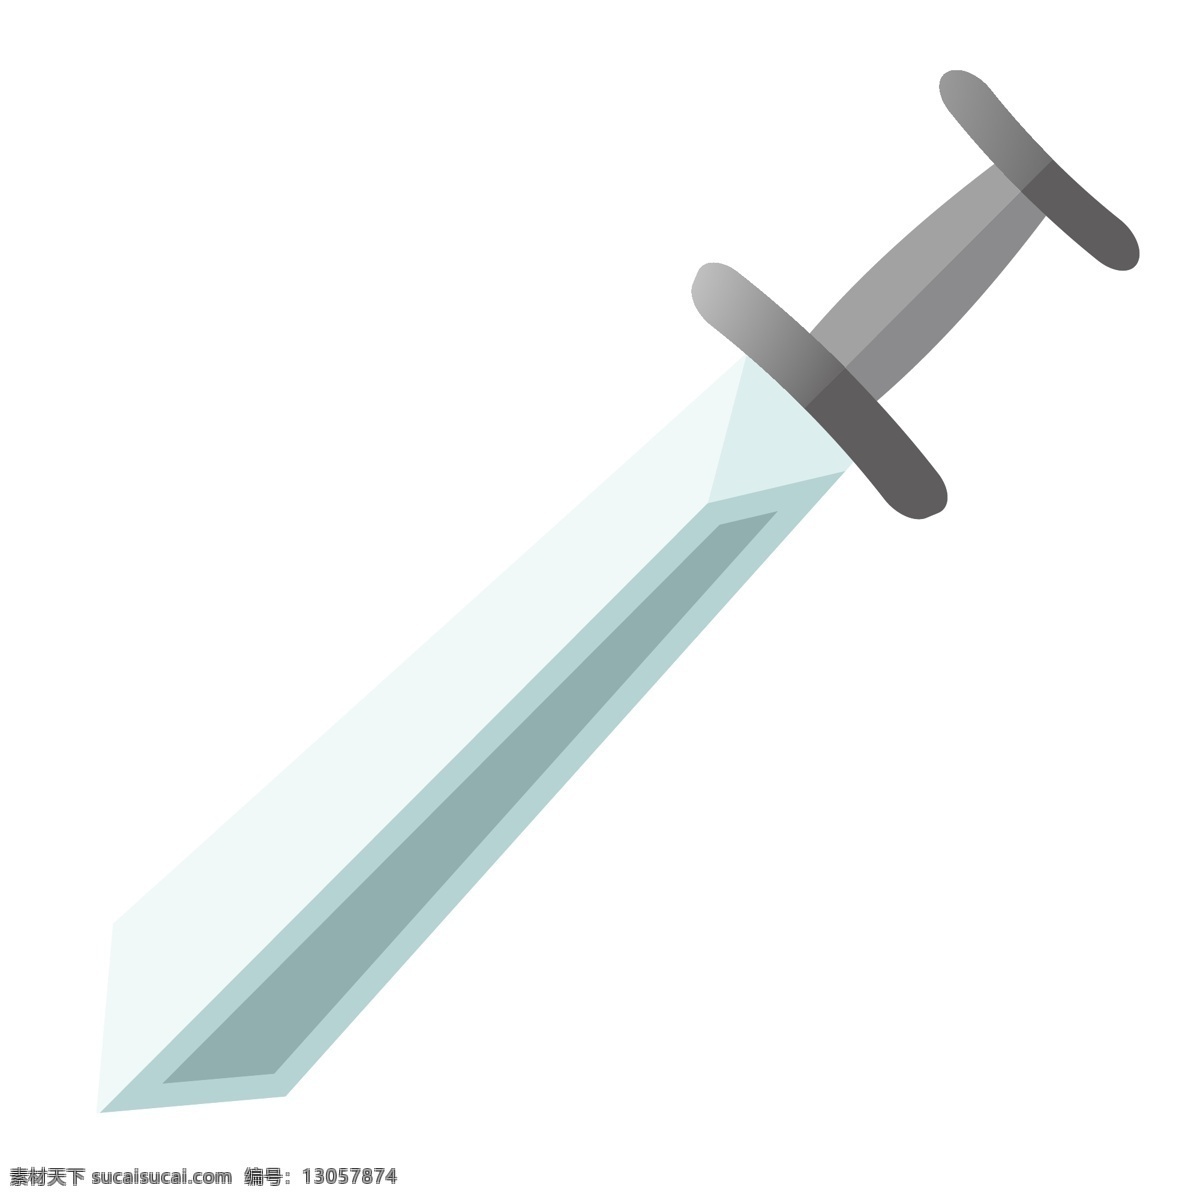 立体 宝剑 装饰 插画 灰色的宝剑 立体宝剑 漂亮的宝剑 创意宝剑 锋利的宝剑 古风宝剑 宝剑插画